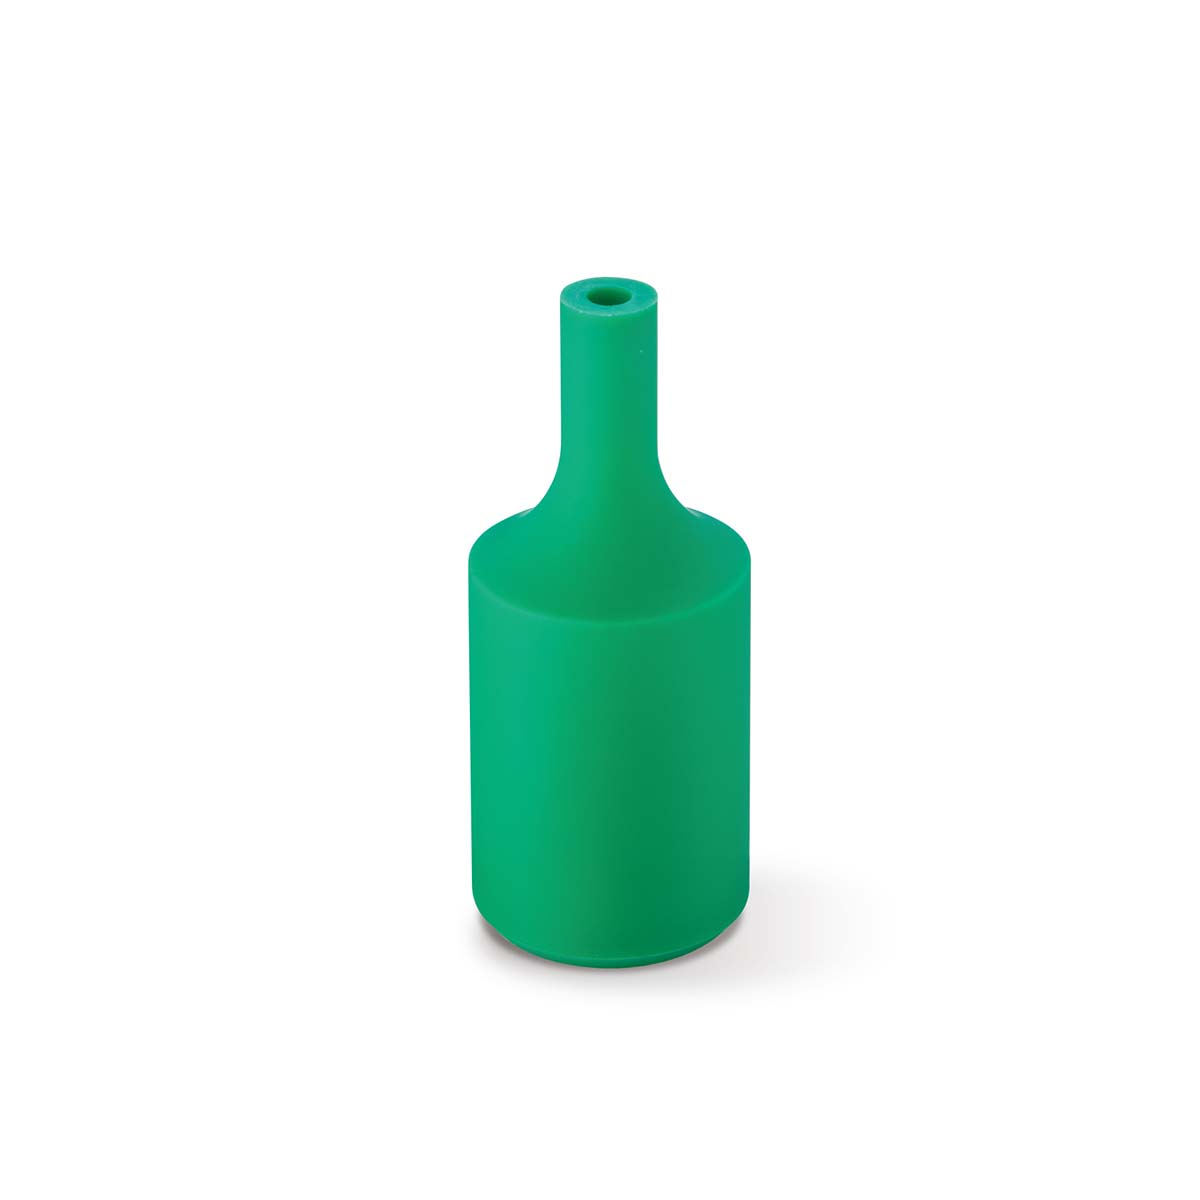 Tangla lighting - TLLH024GN - lamp holder silicon - E27 - bottle - green